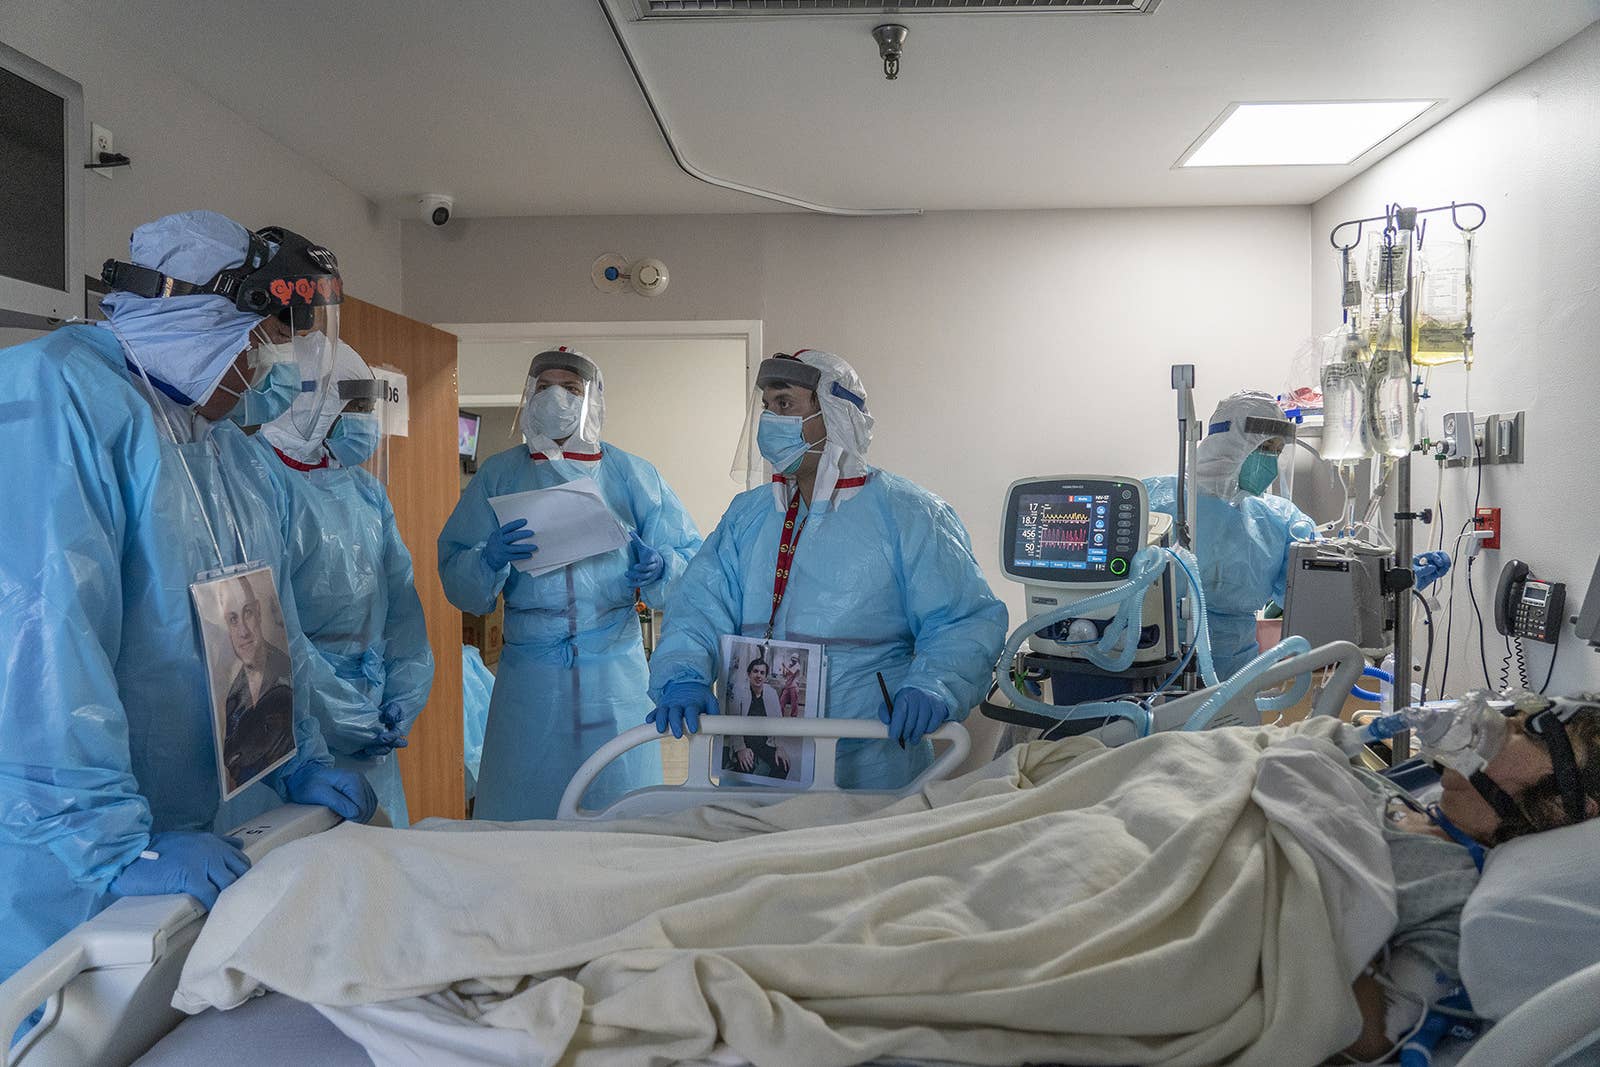 До слёз: фотограф из Техаса показал снимки, сделанные в госпитале, где лежат с COVID-19 - фото 5